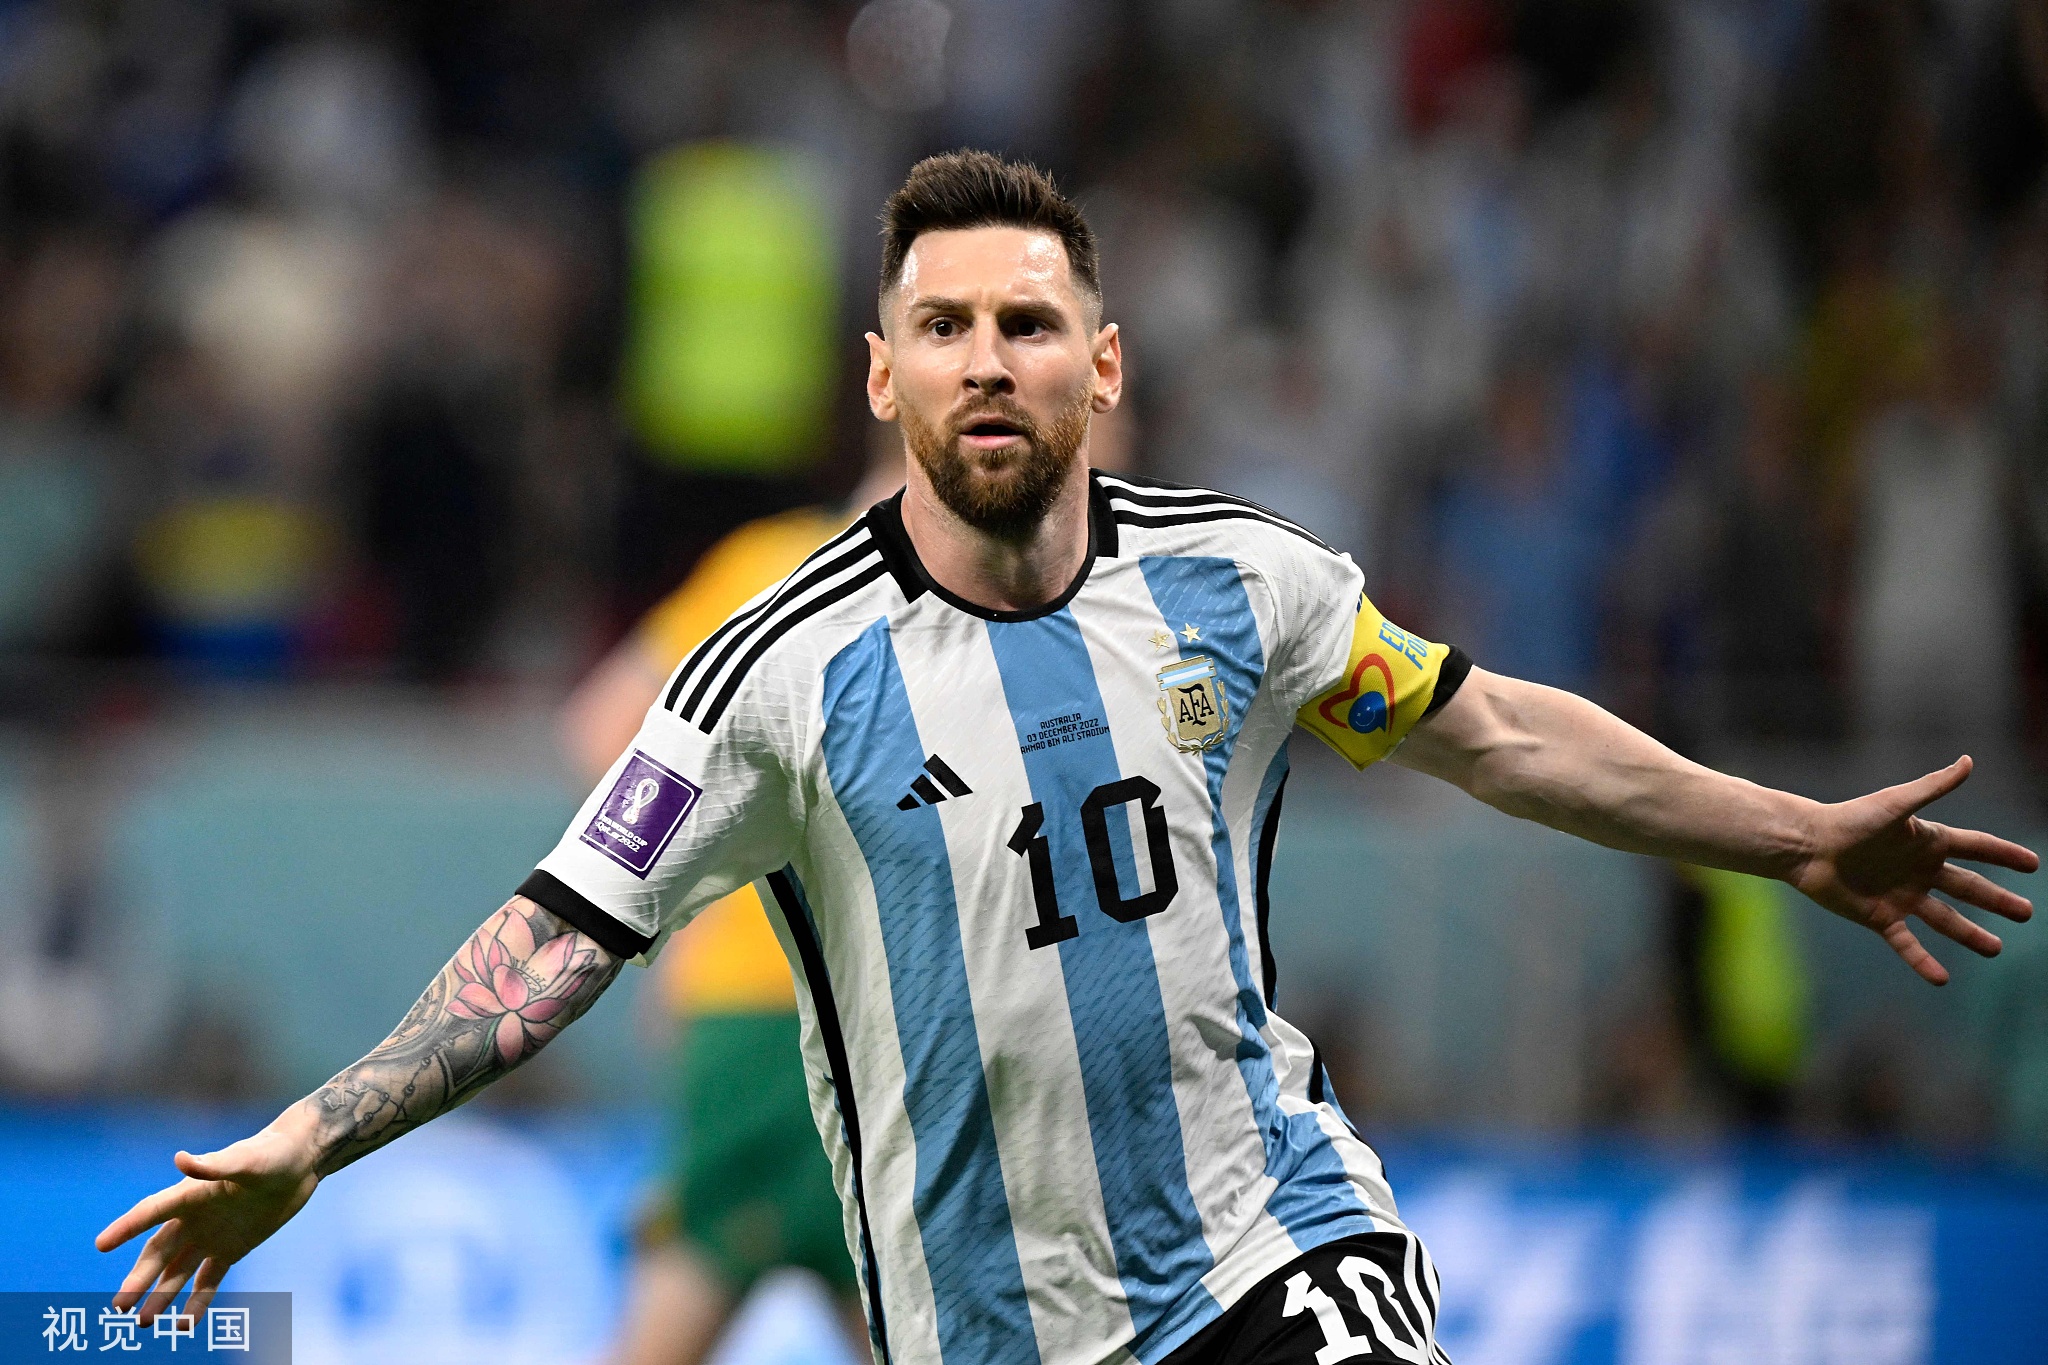 德容谈对阵阿根廷:阿根廷是夺冠热门 但我们也是